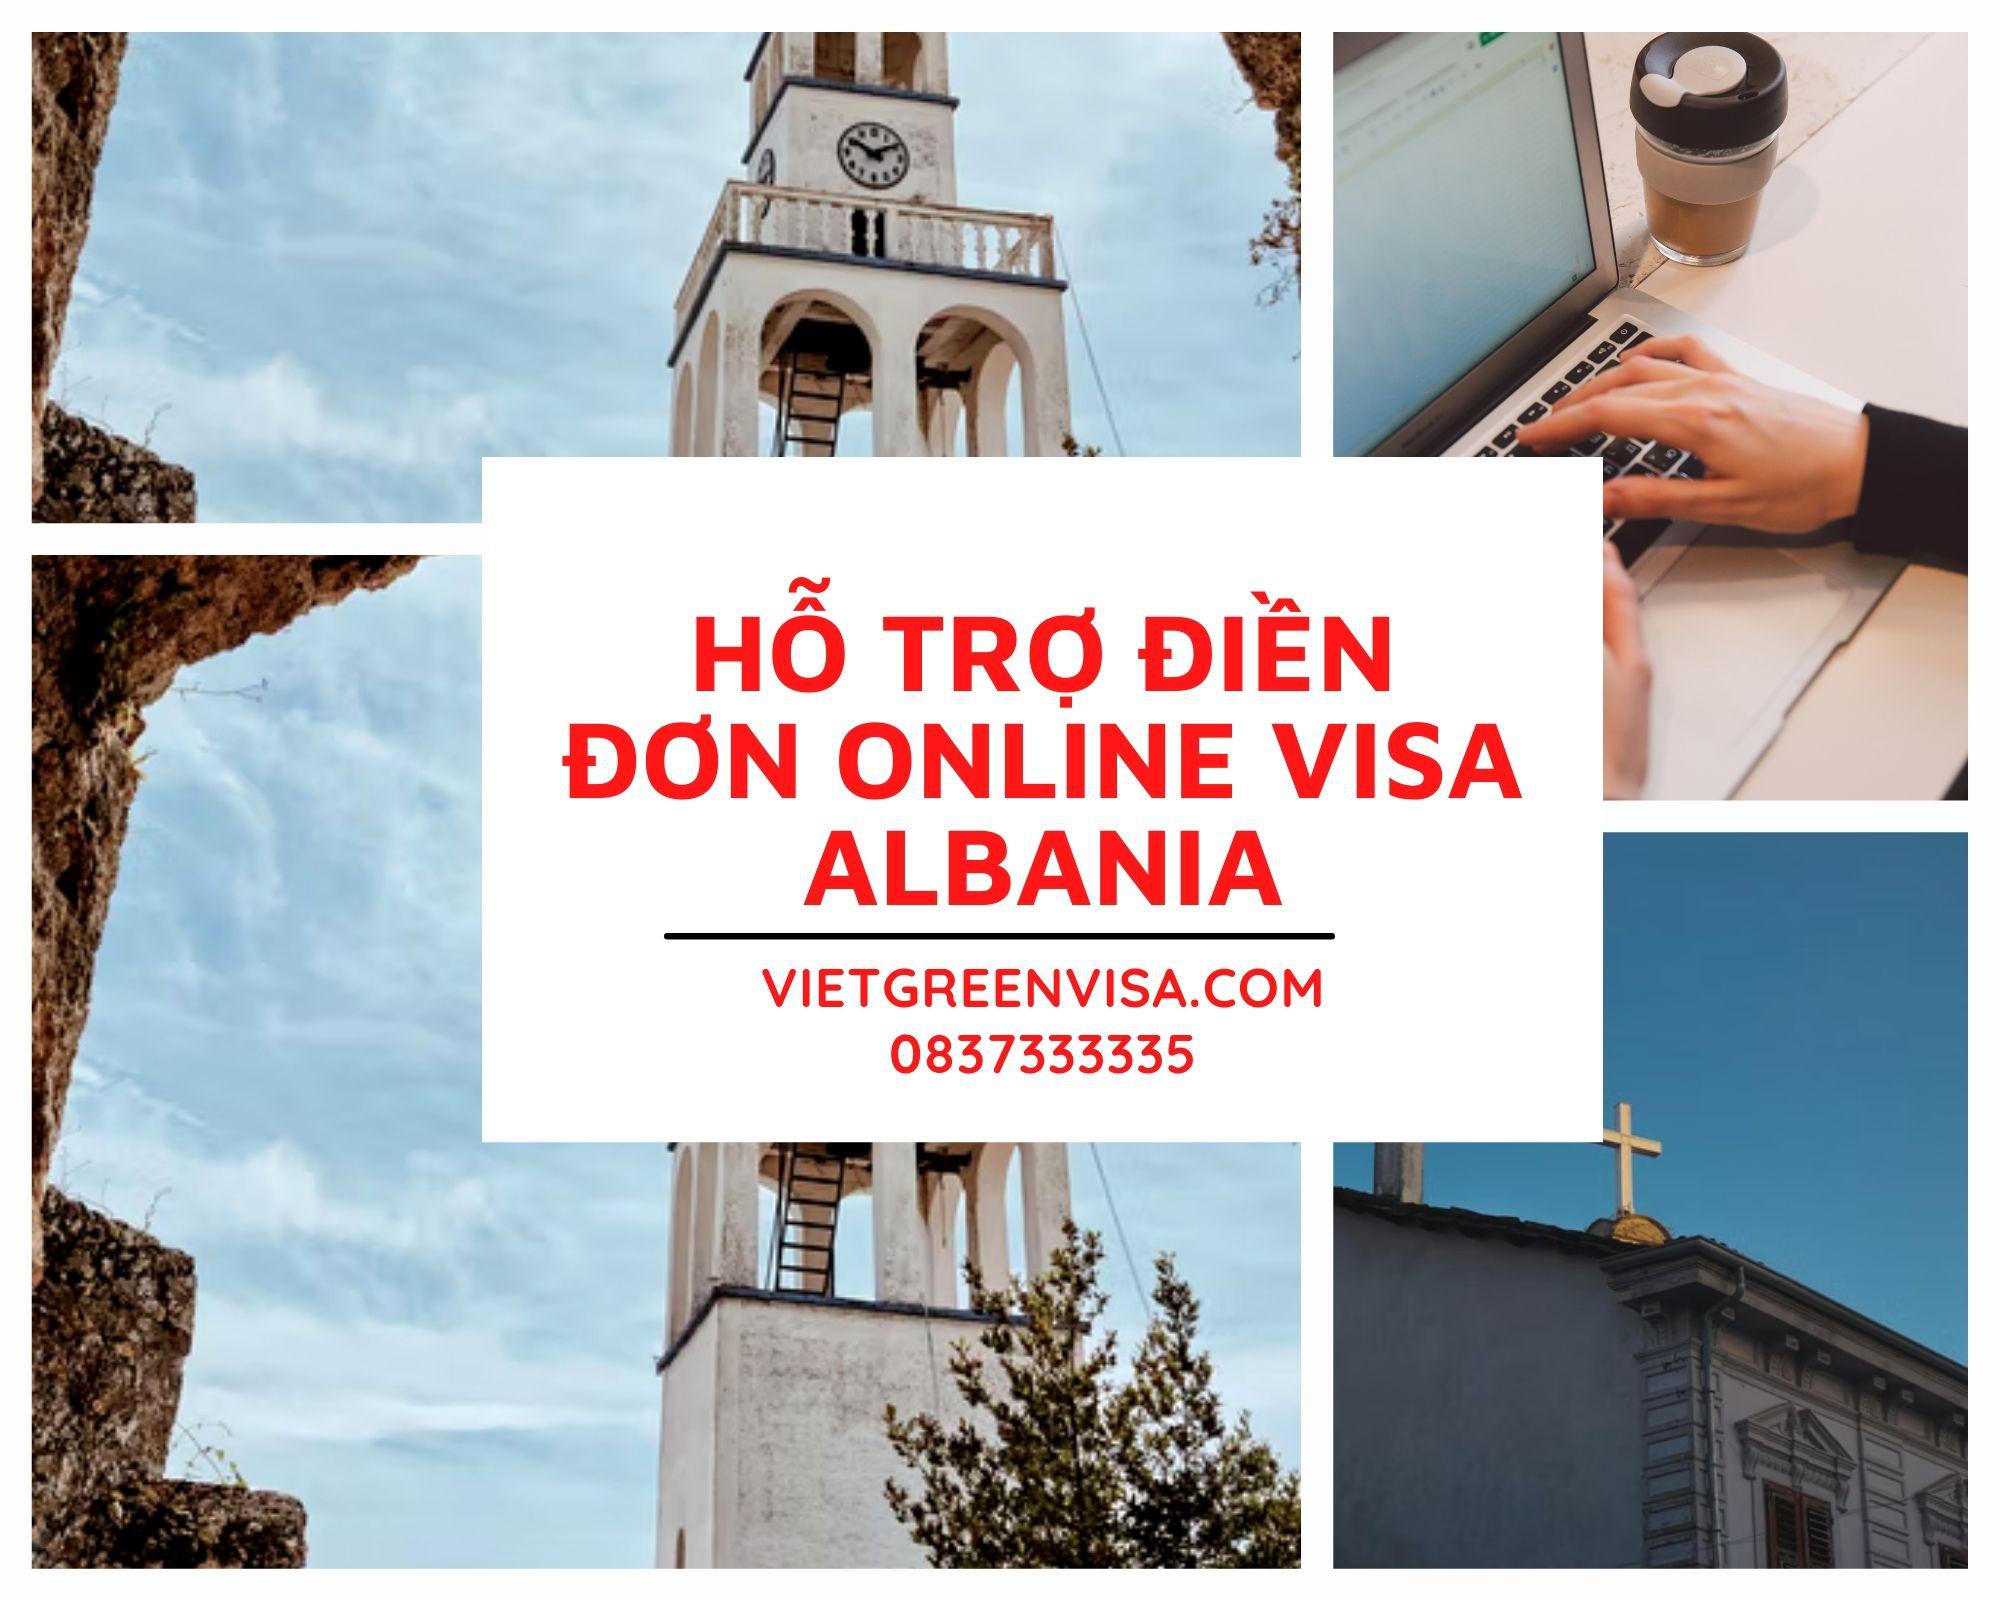 Dịch vụ điền đơn visa Albania online nhanh